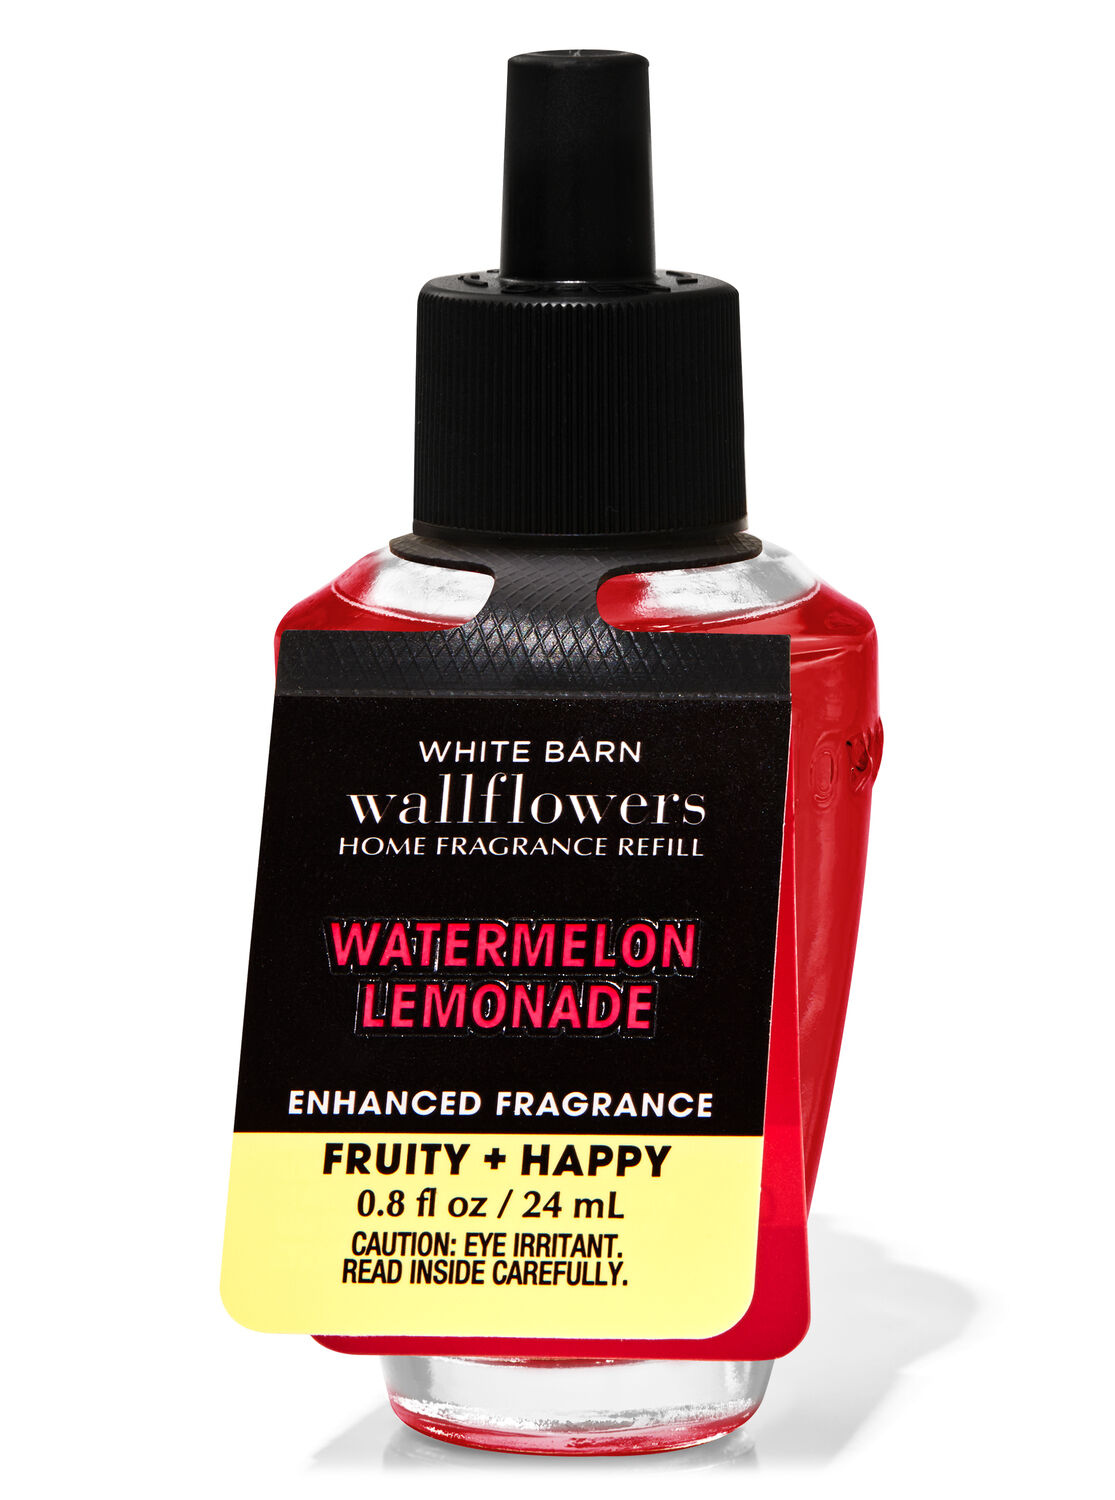 Watermelon Lemonade Wallflowers Fragrance Refill